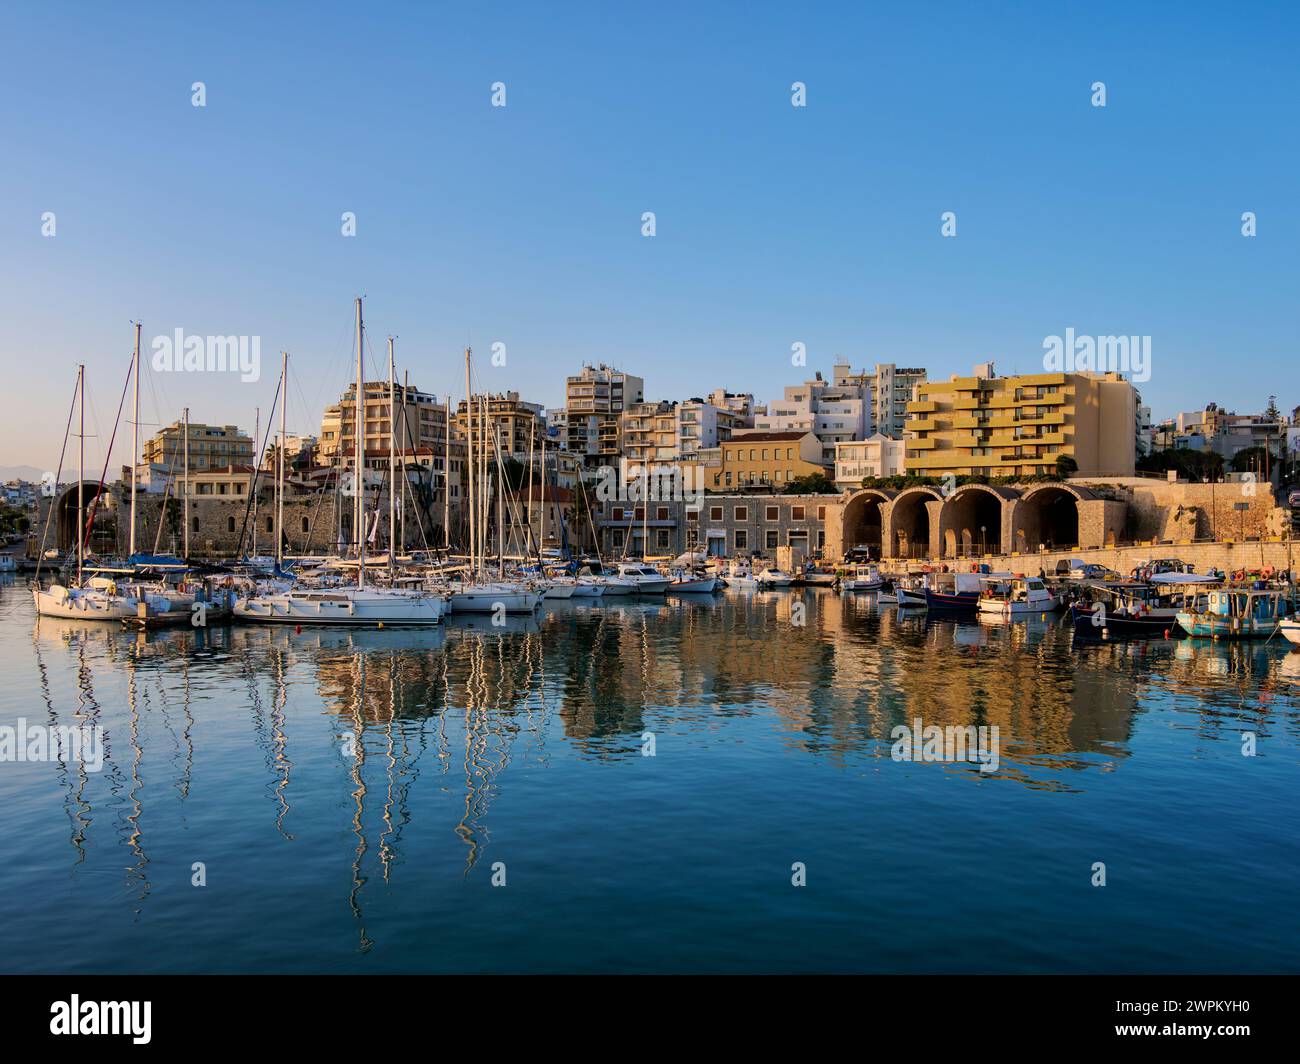 Cantieri navali veneziani al Porto Vecchio, alba, città di Heraklion, isole greche, Grecia, Europa Foto Stock